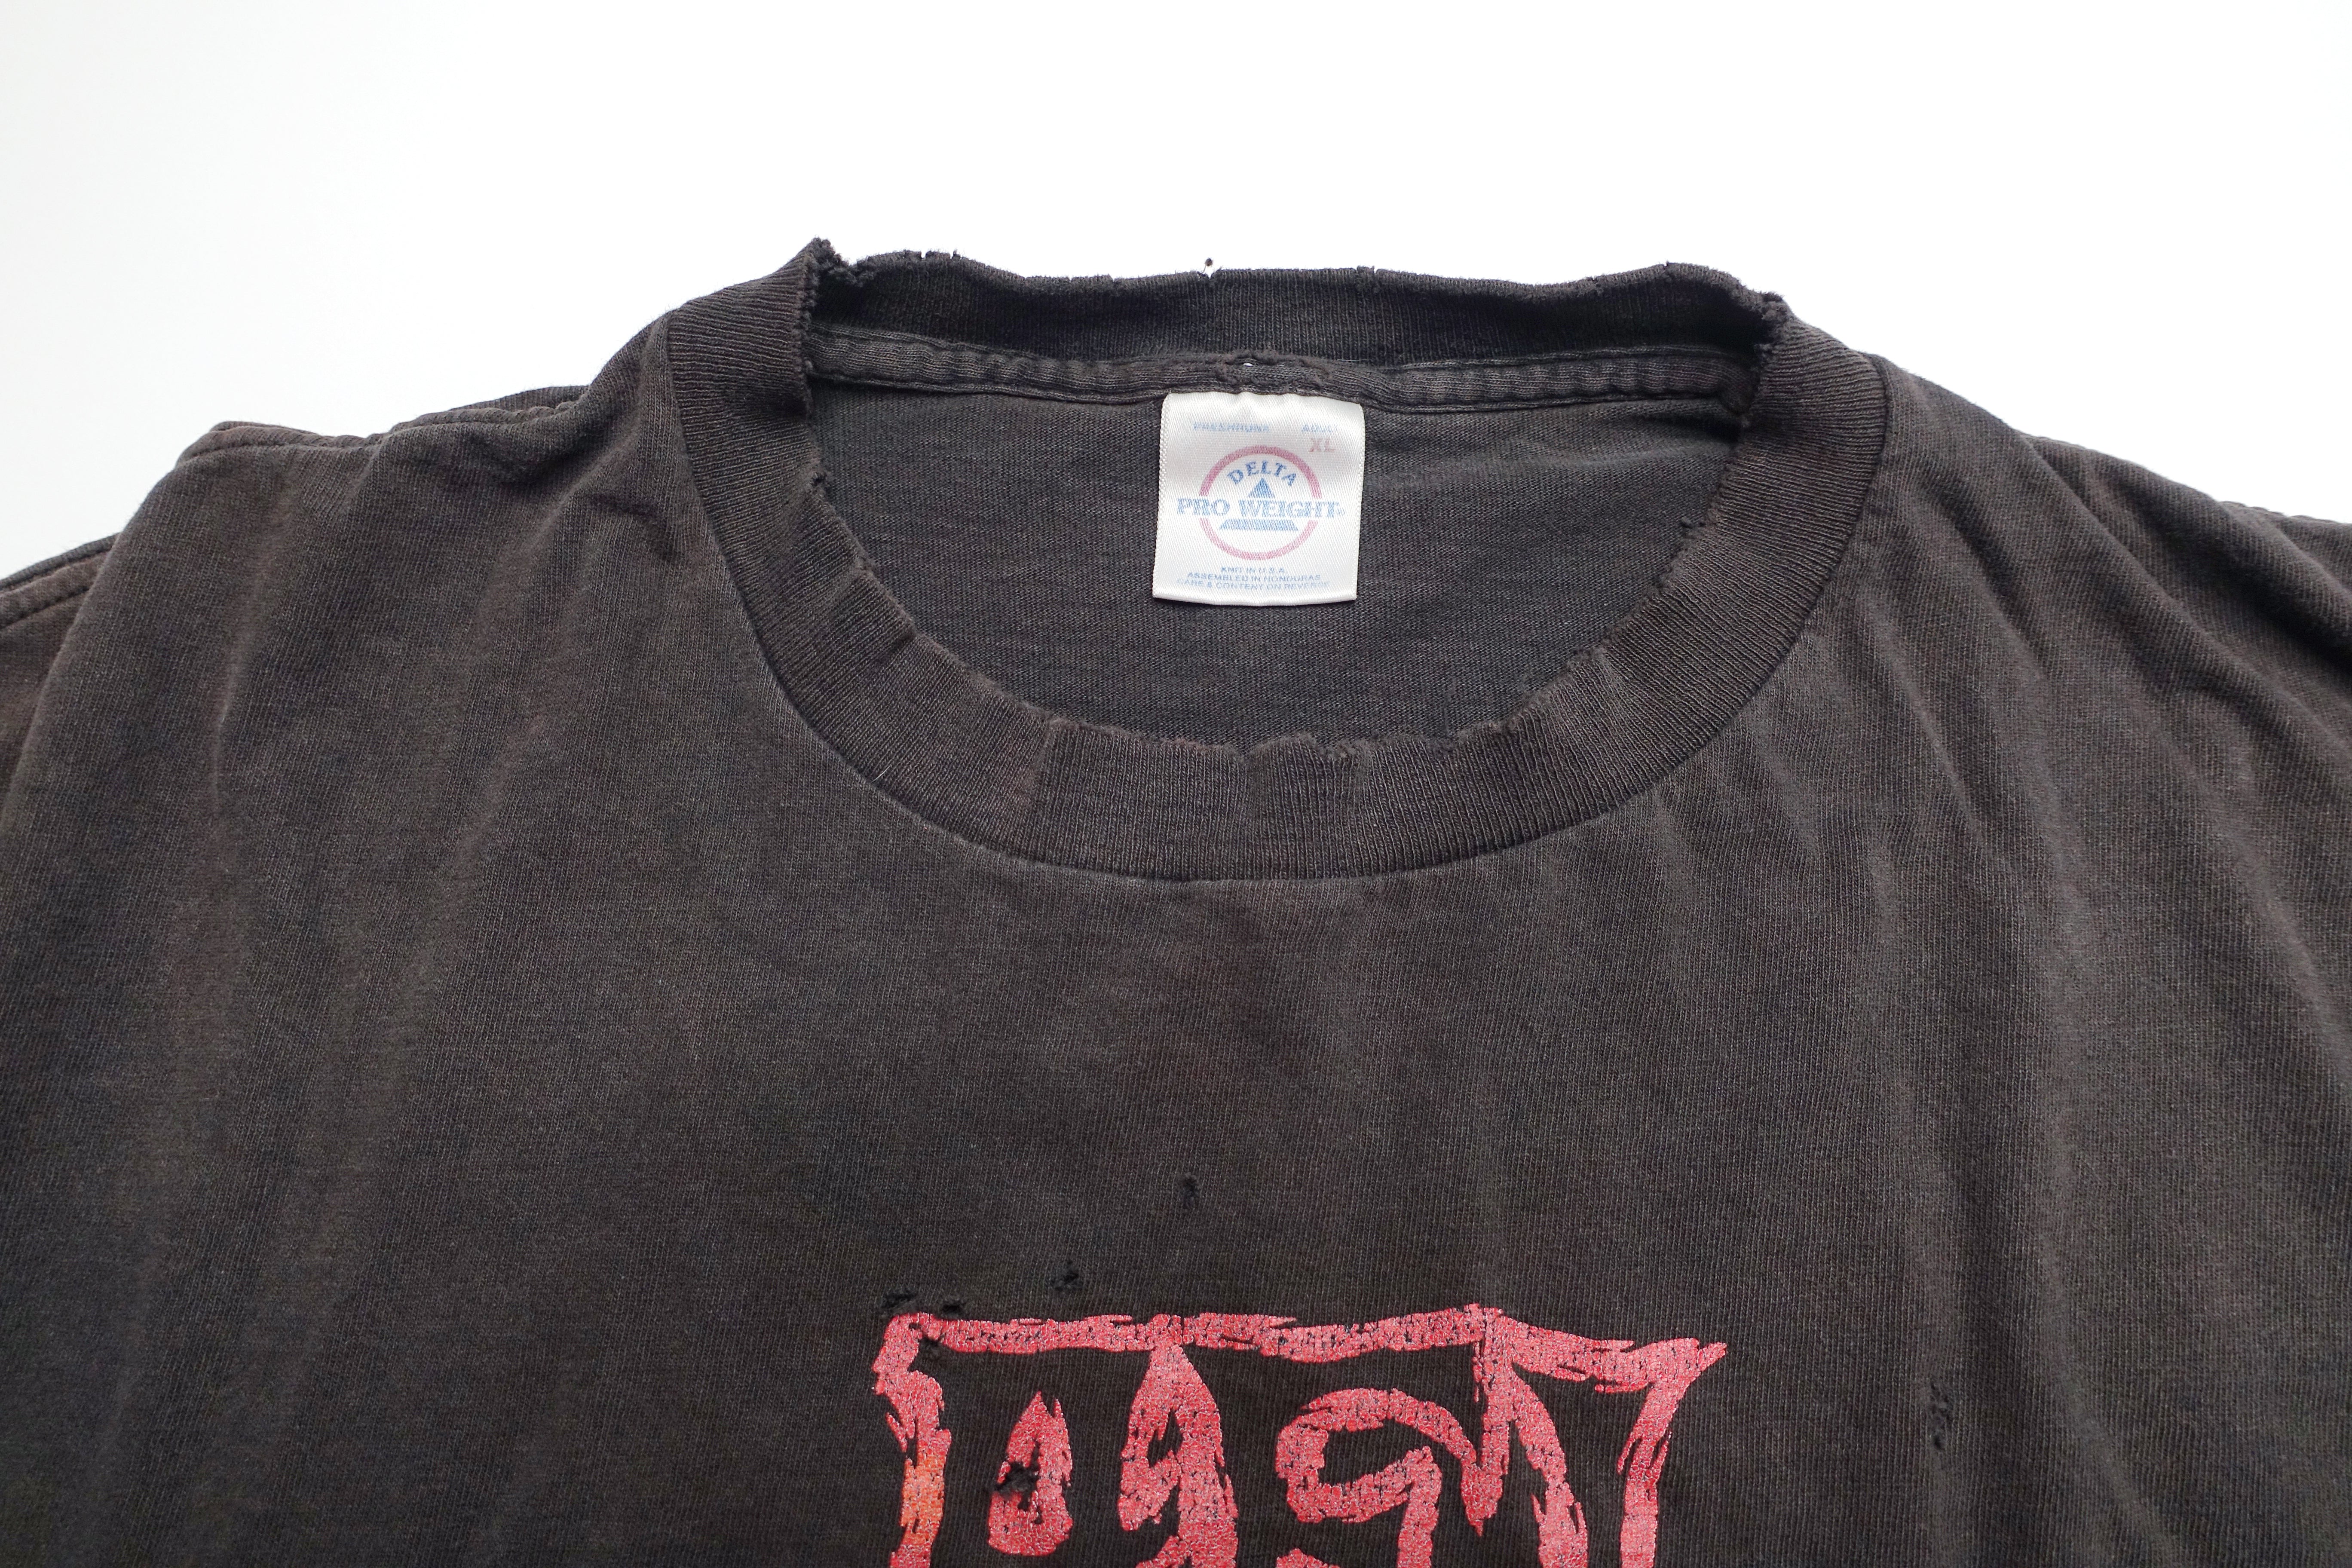 AFI - I Remain / Art Of Drowning 2000 Tour Shirt Size XL